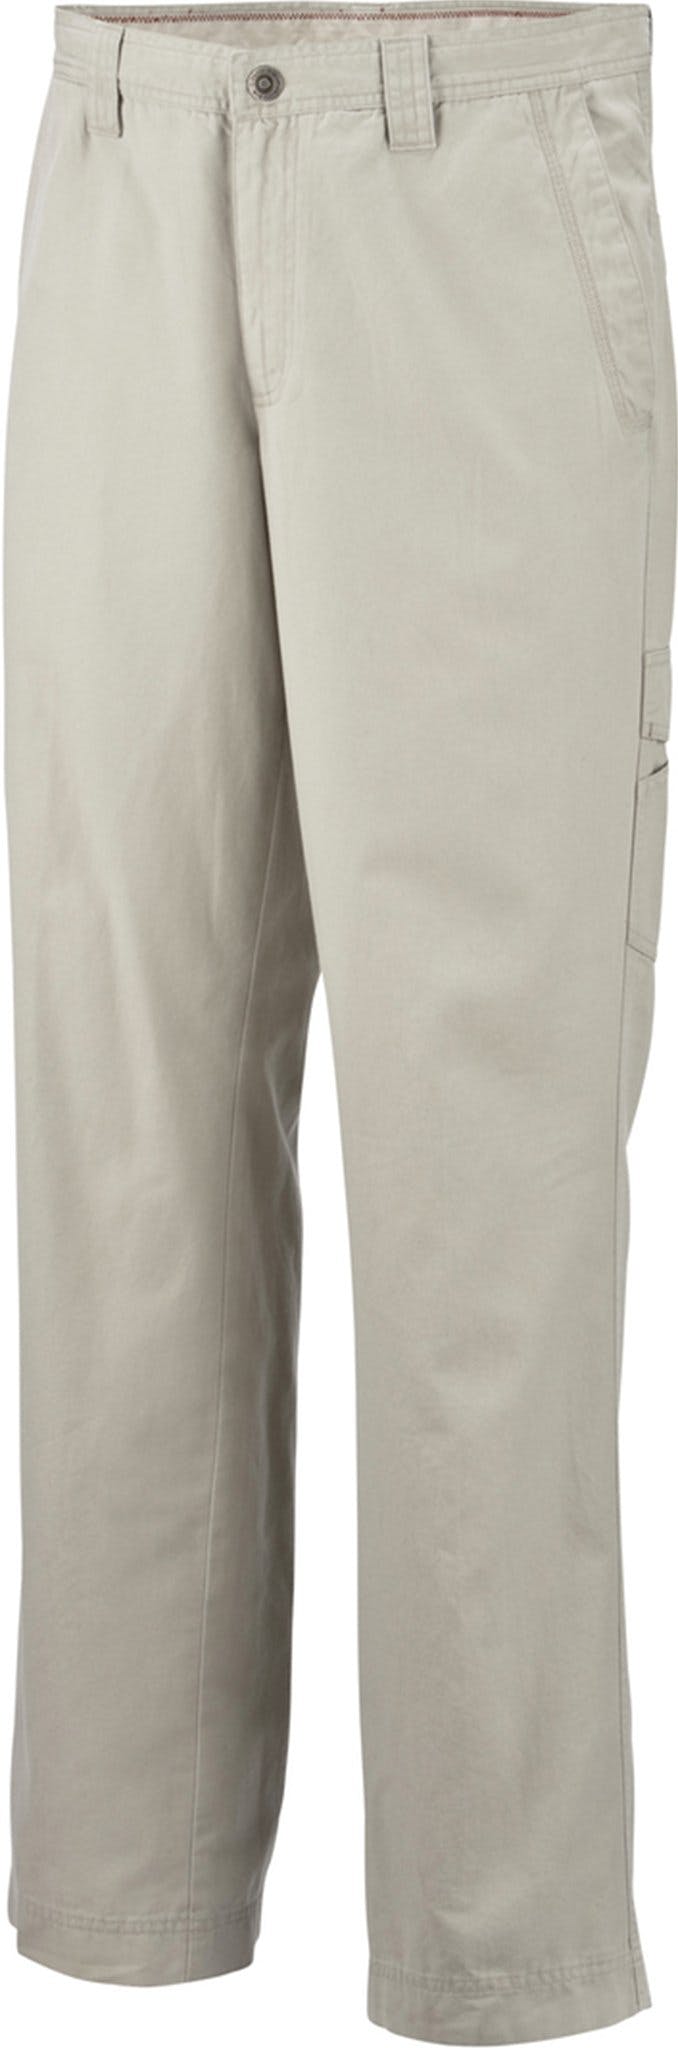 Numéro de l'image de la galerie de produits 1 pour le produit Pantalon grande taille Ultimate ROC - Homme